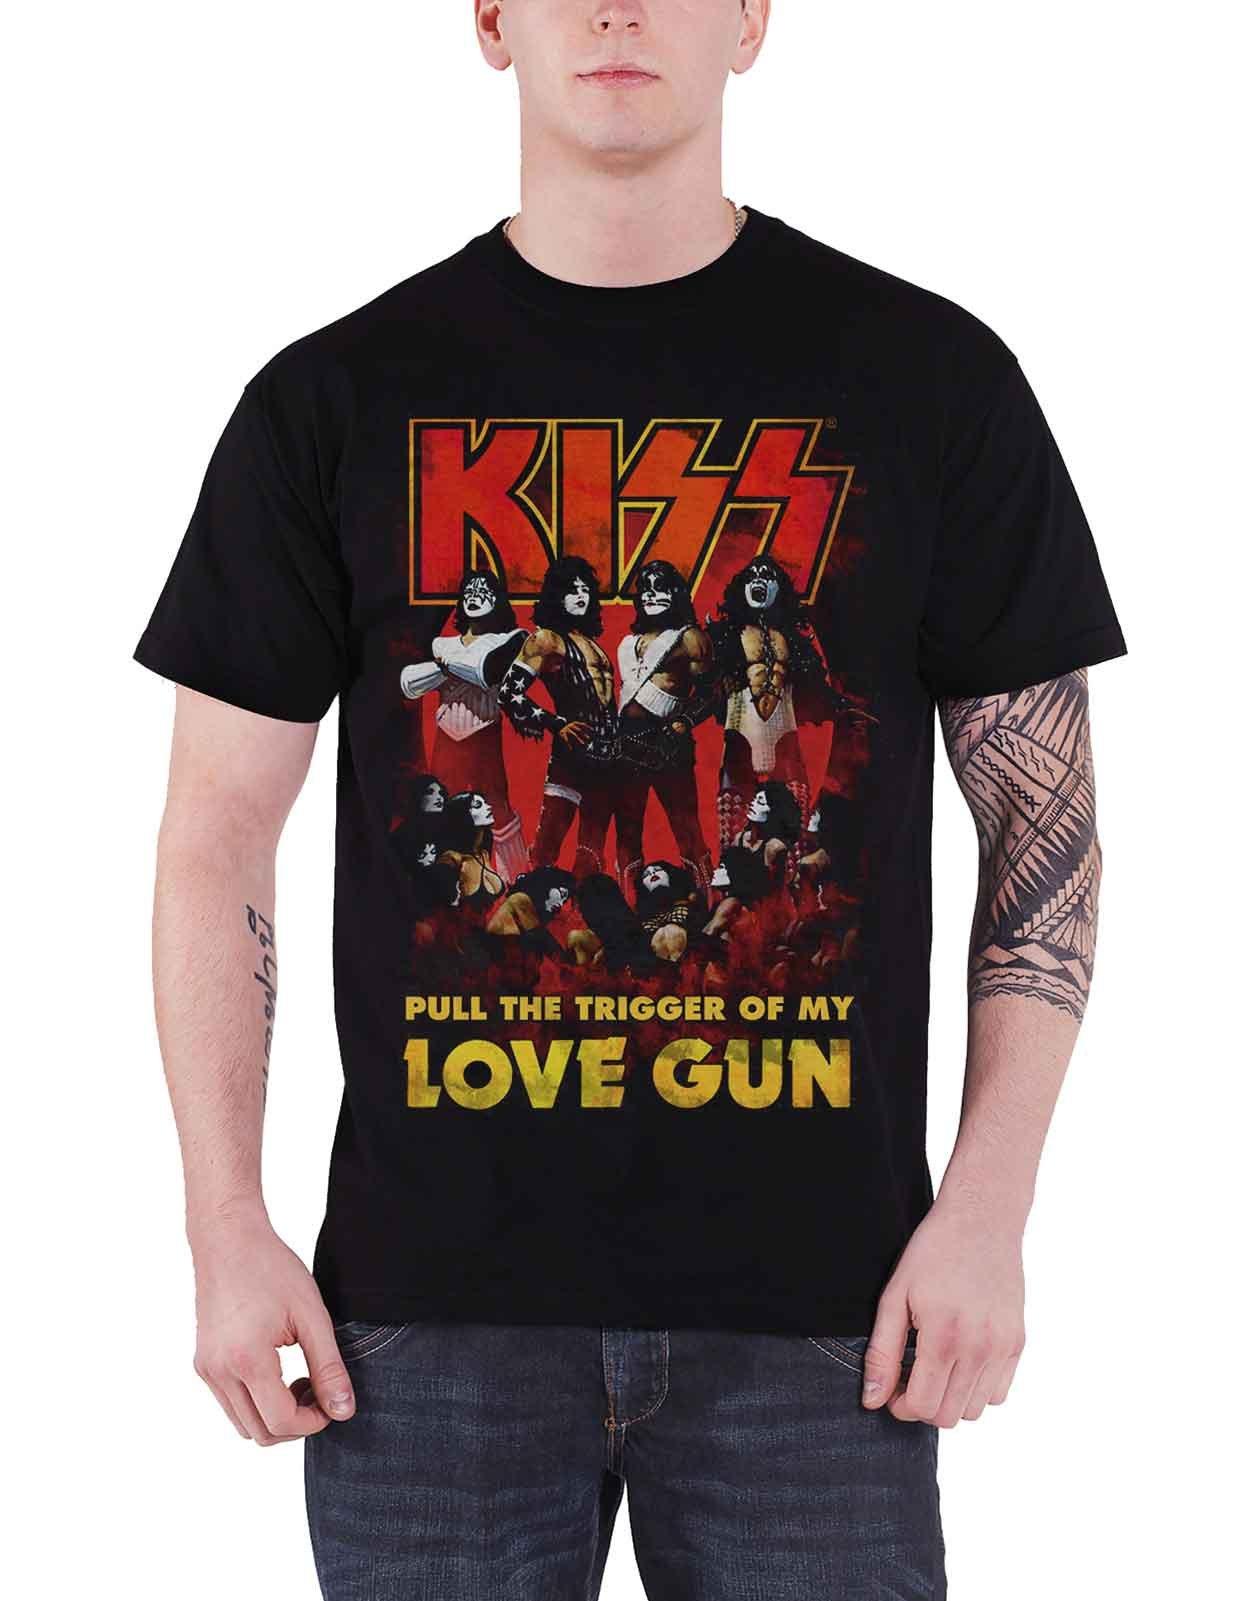 clement jennifer gun love Светящаяся футболка Love Gun KISS, черный